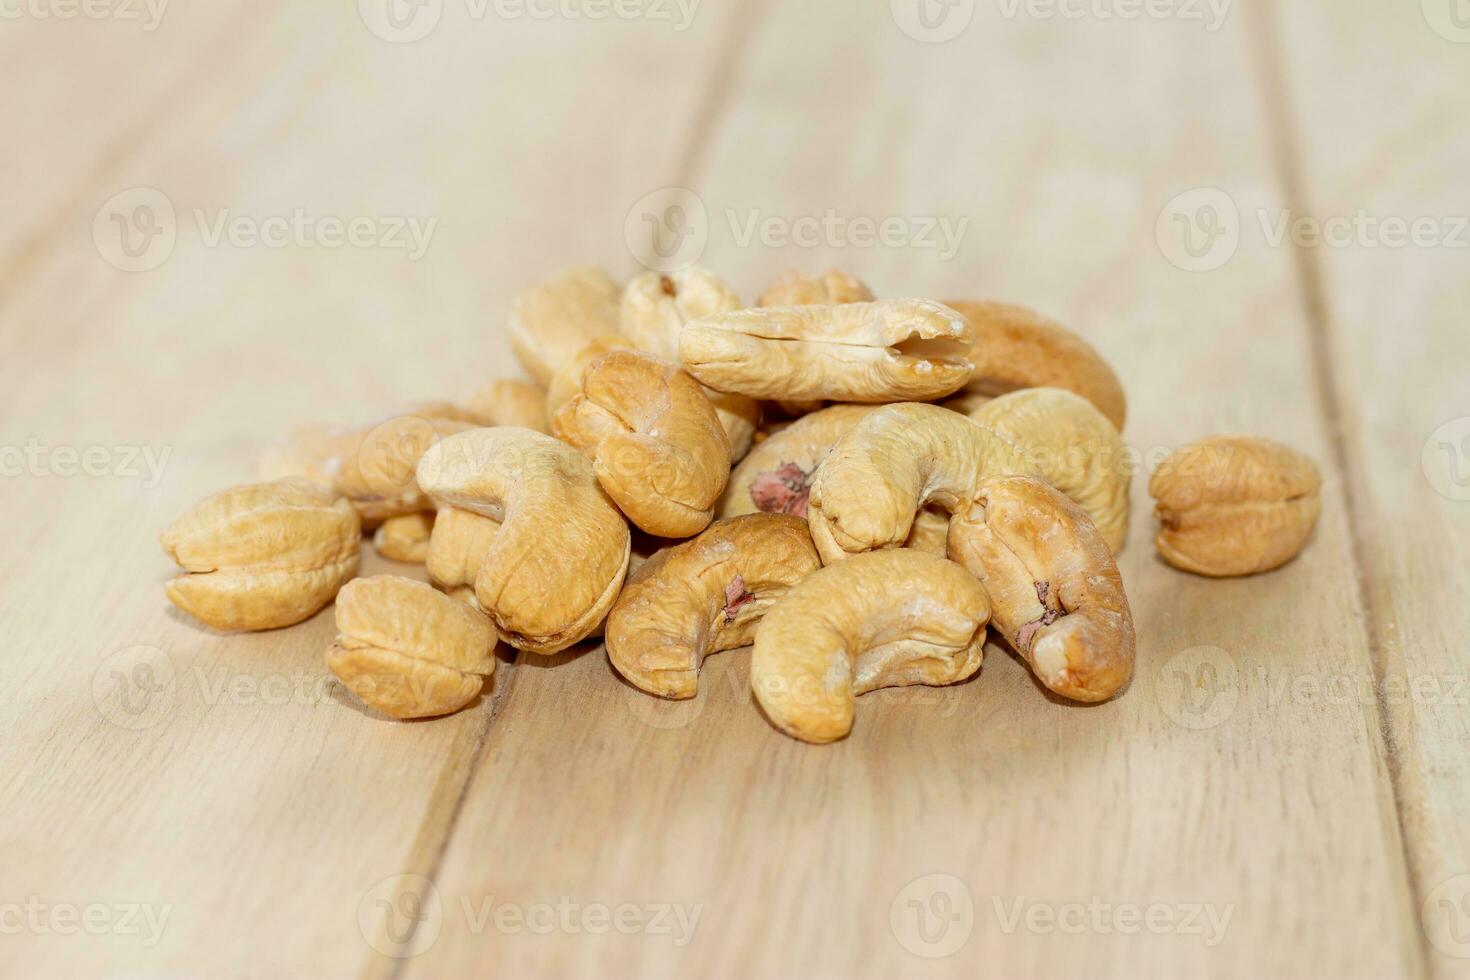 många rostad saltade kasju nötter på trä- bakgrund foto